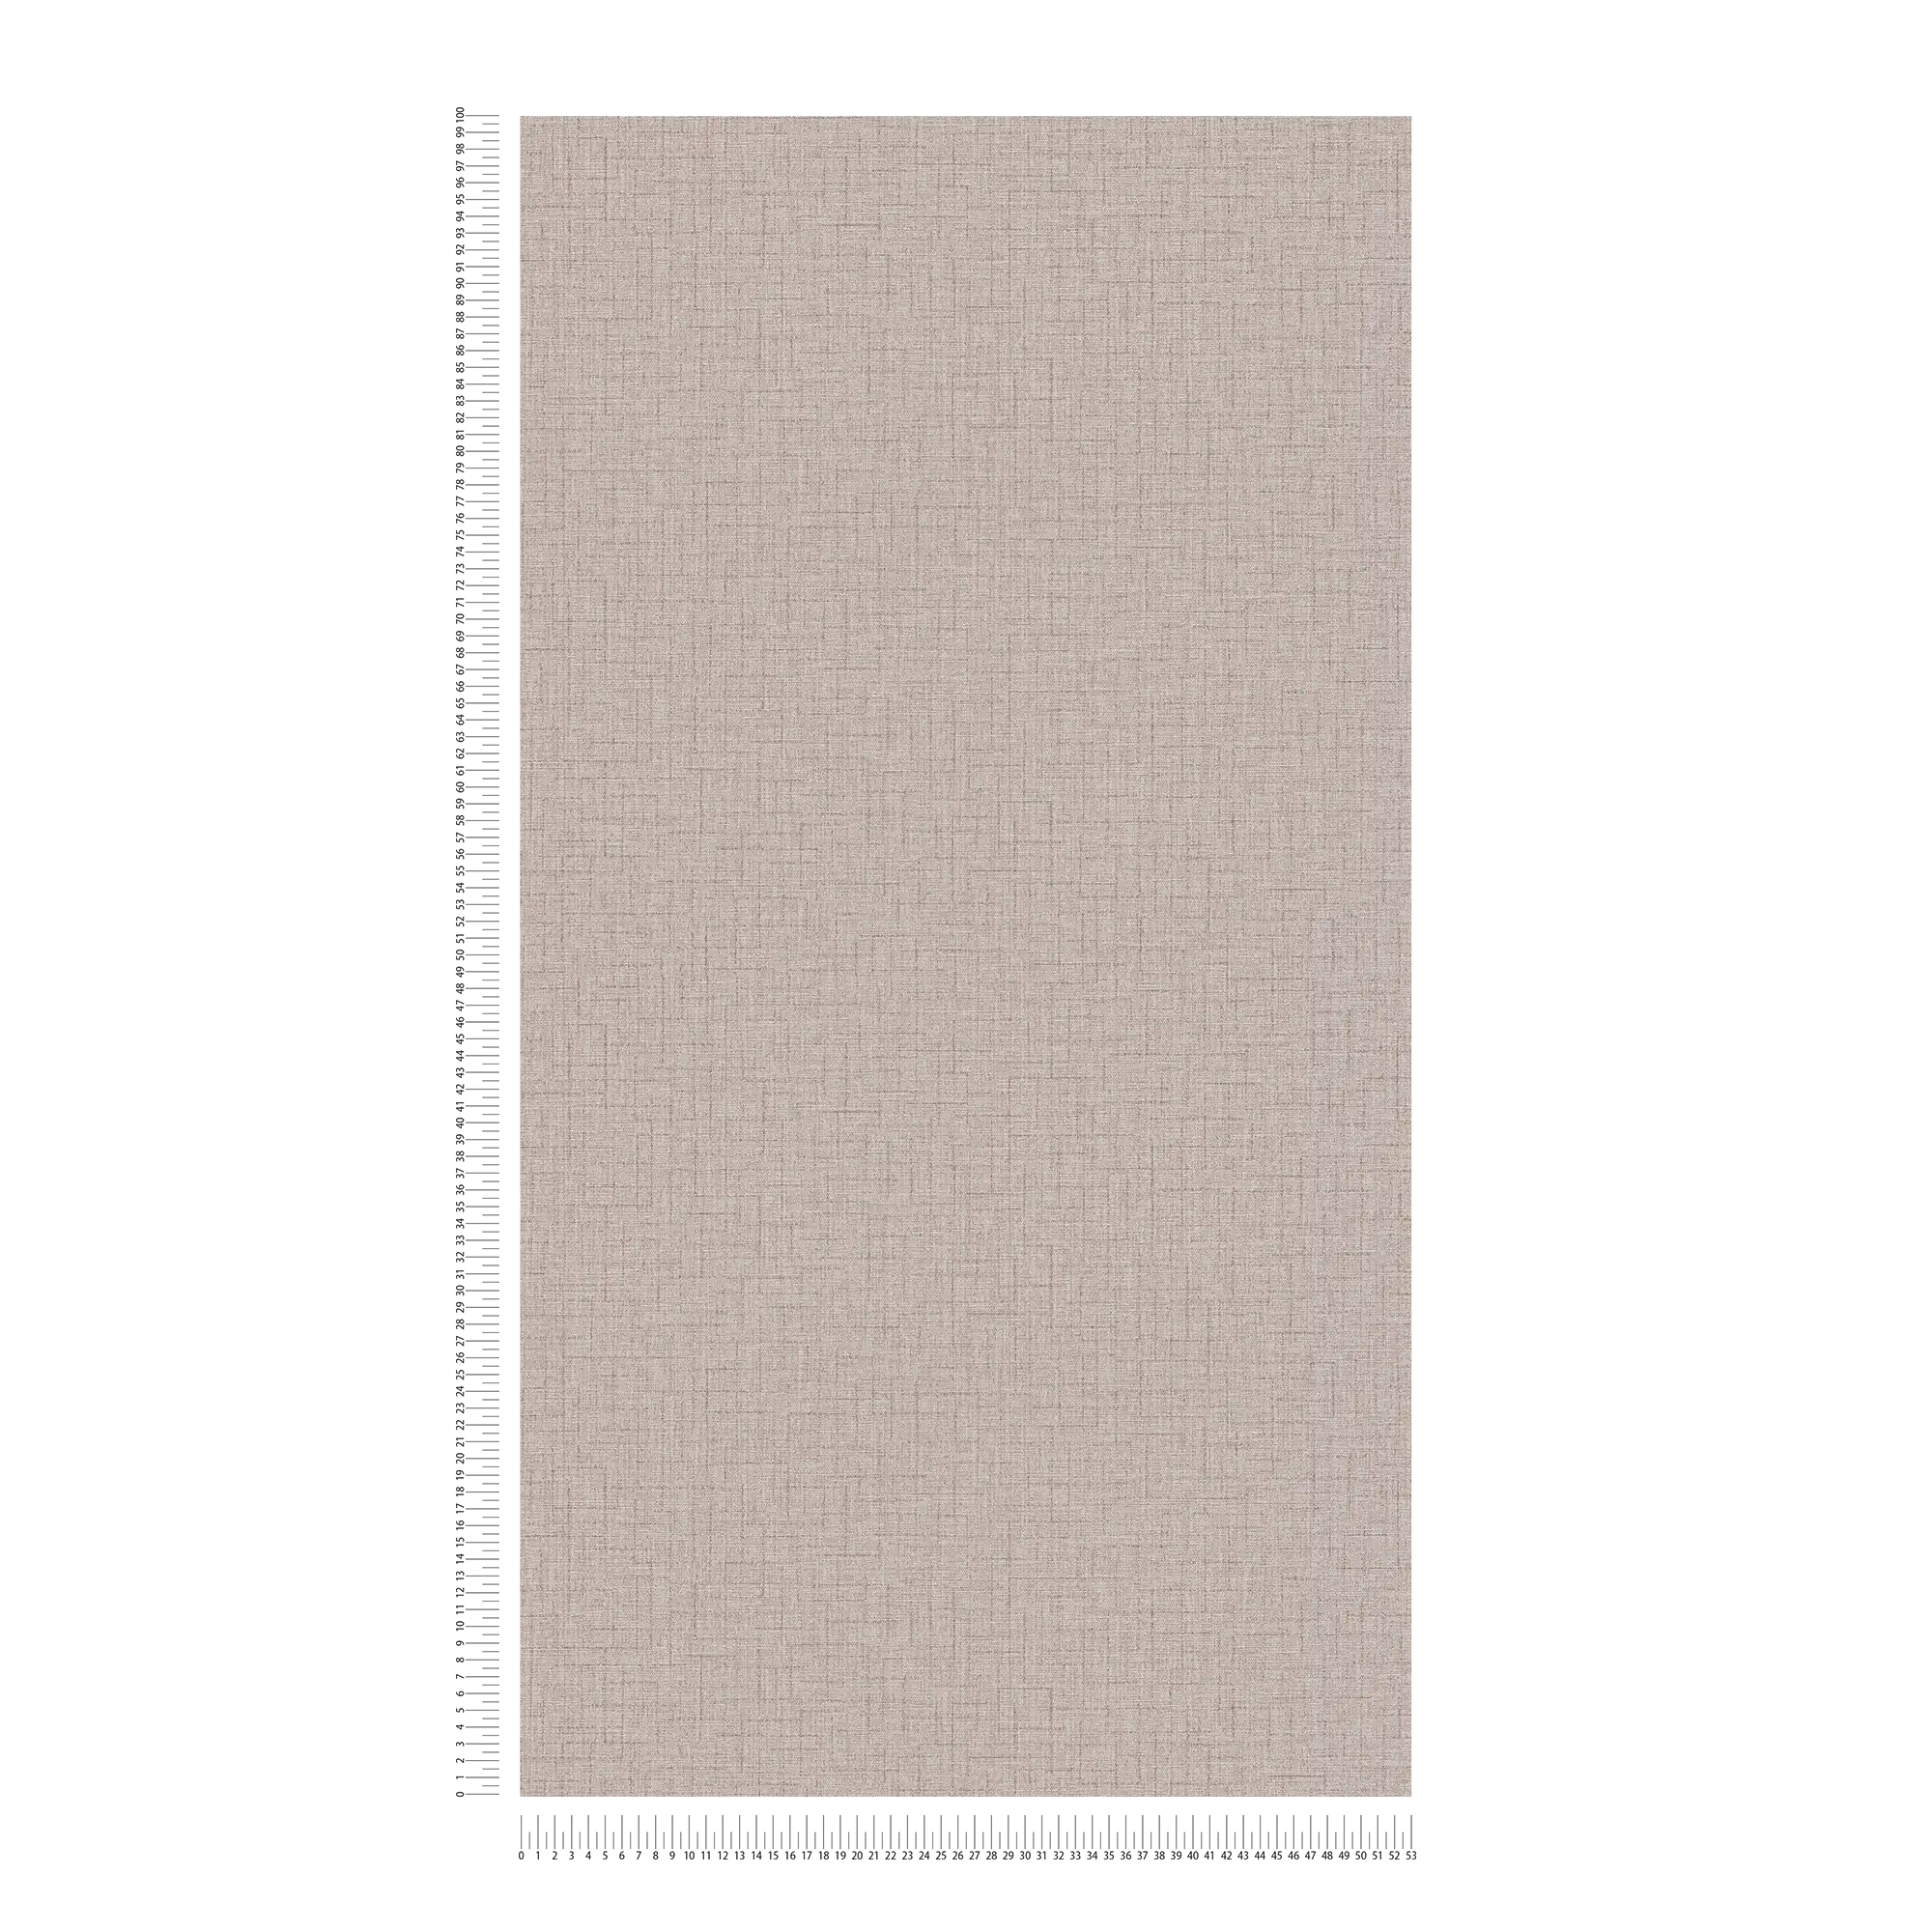             Plain wallpaper with textile design & texture pattern - beige
        